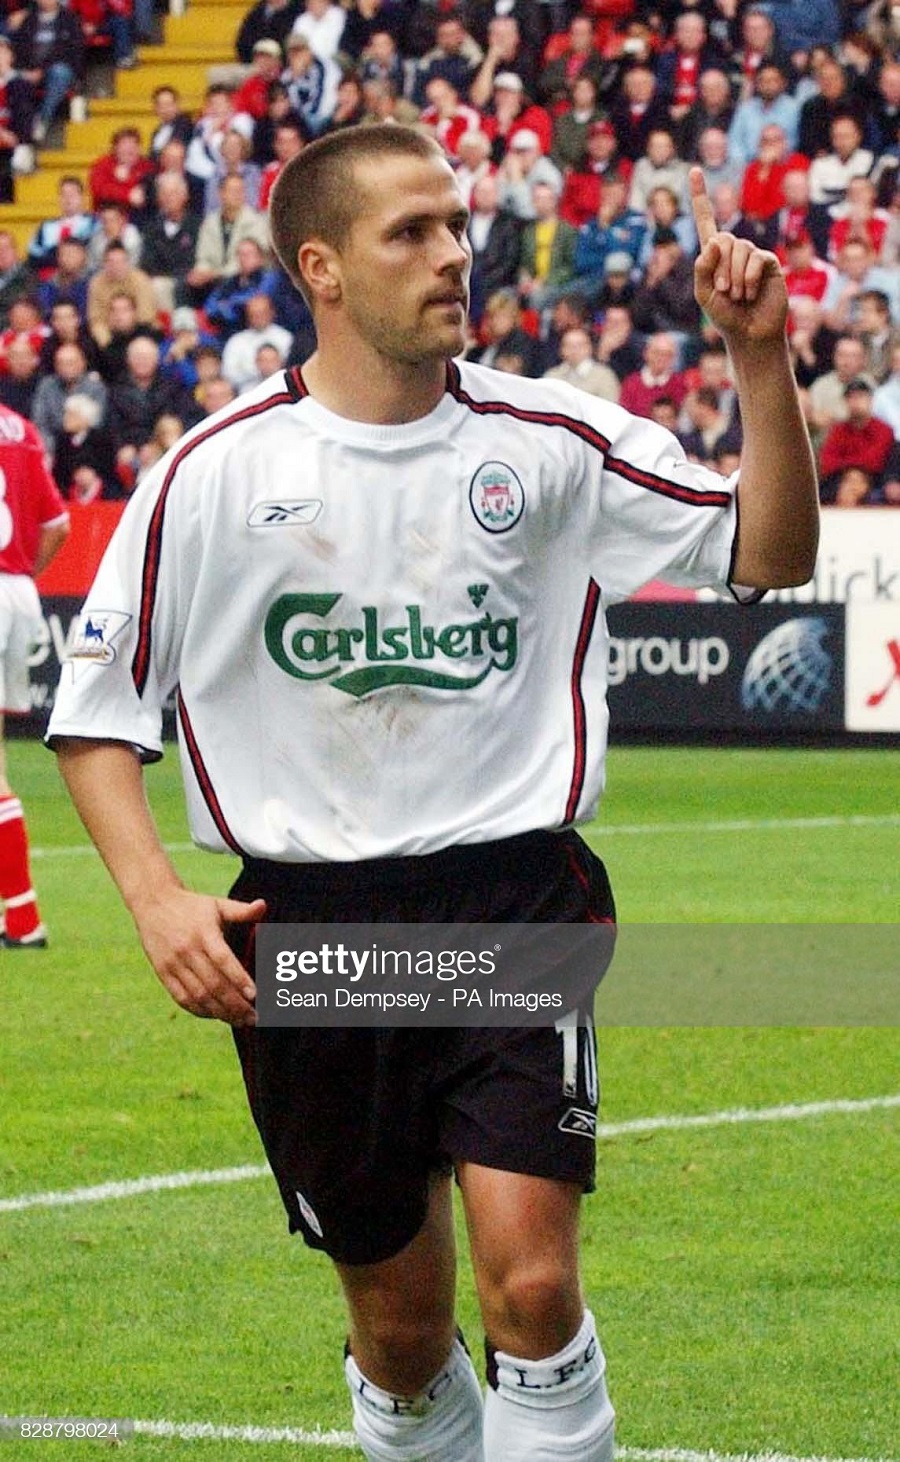 Áo đấu Liverpool 2003 2004 2005 away white shirt jersey Reebok